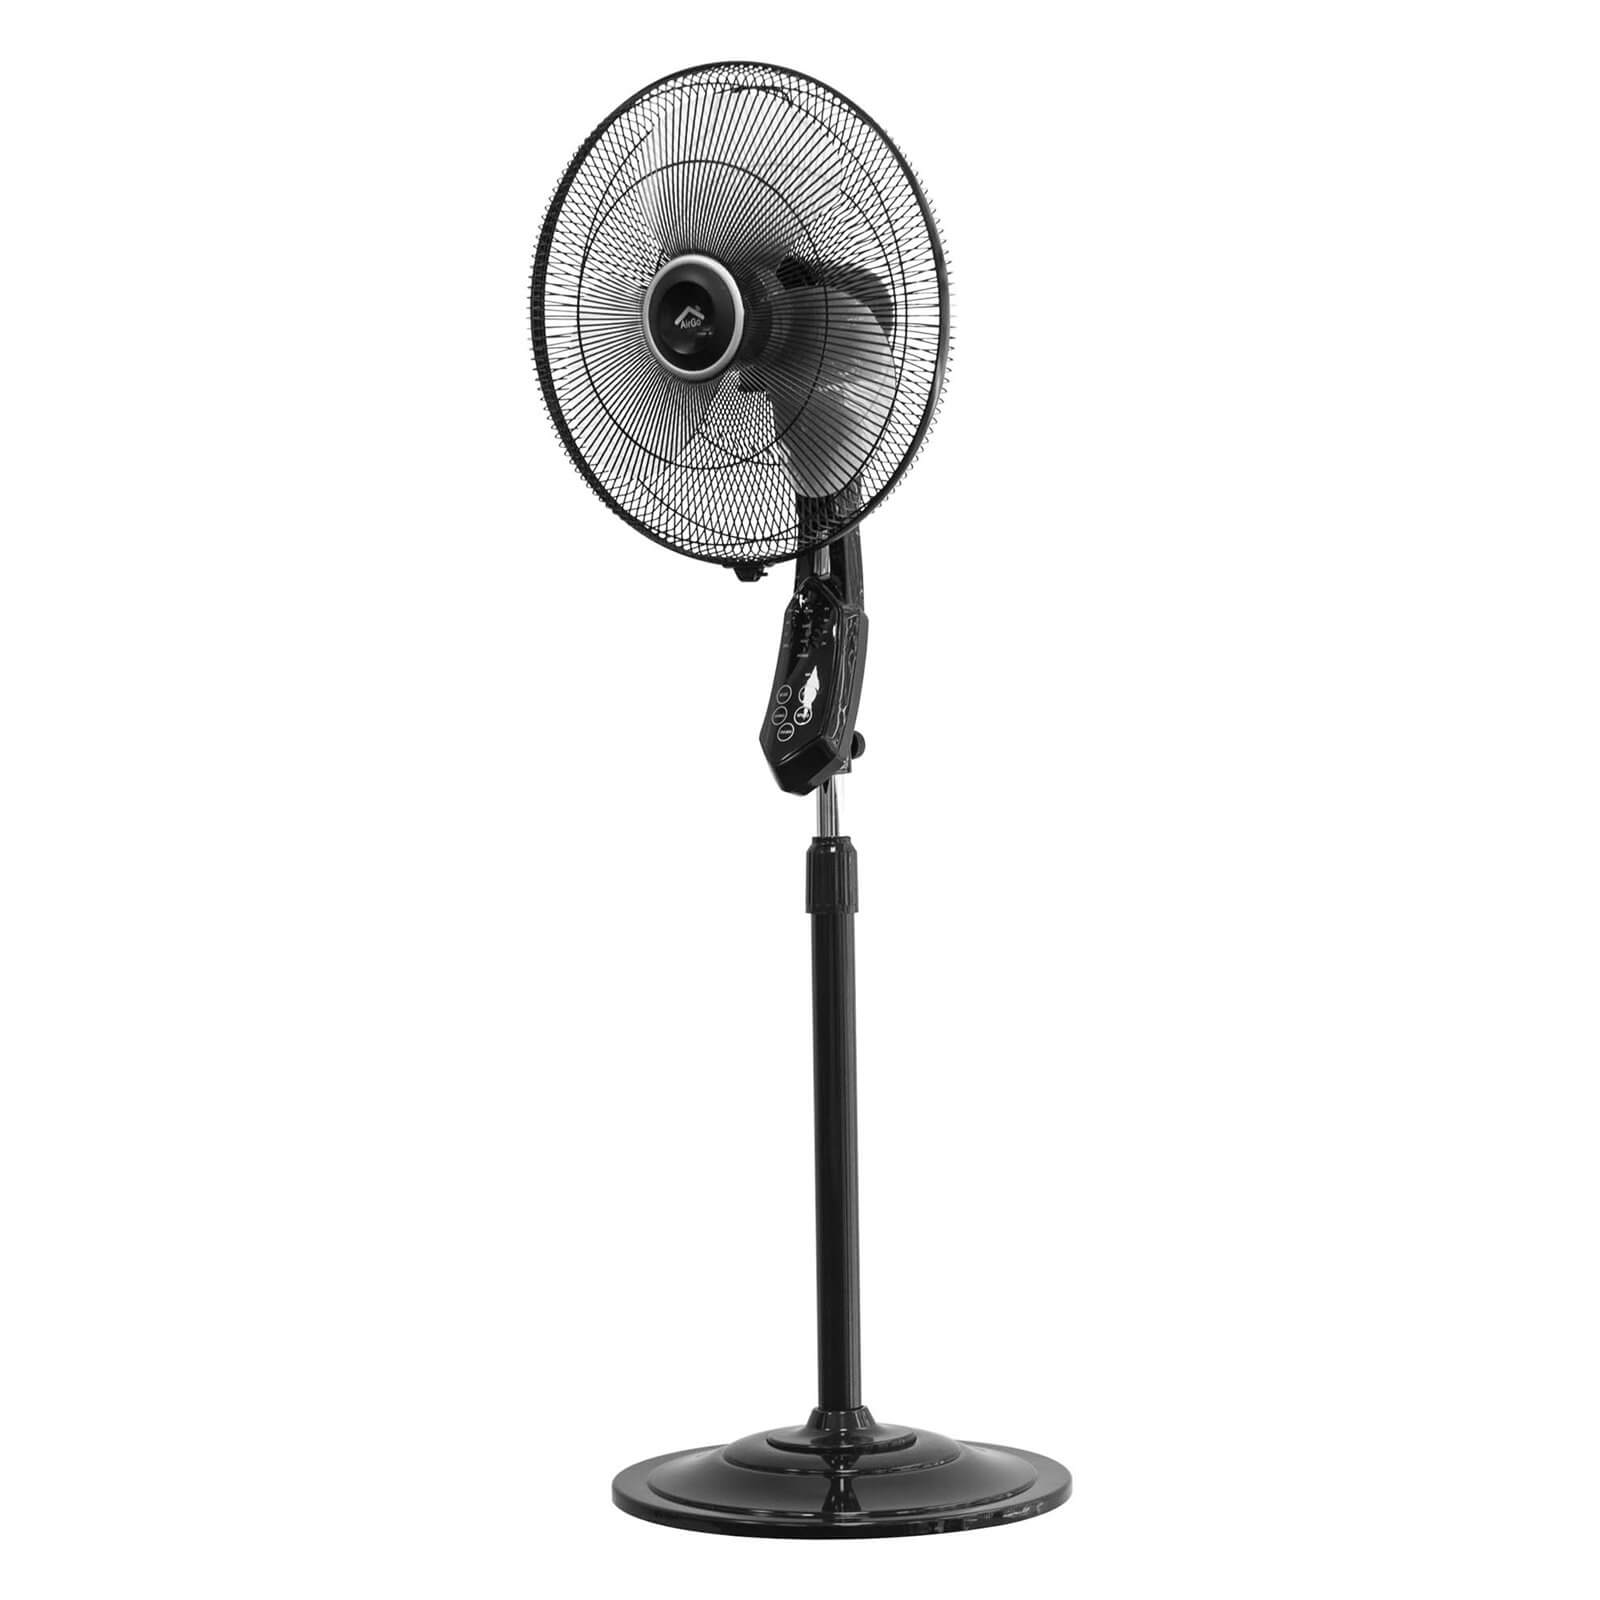 AirGo Smart Pedestal Fan